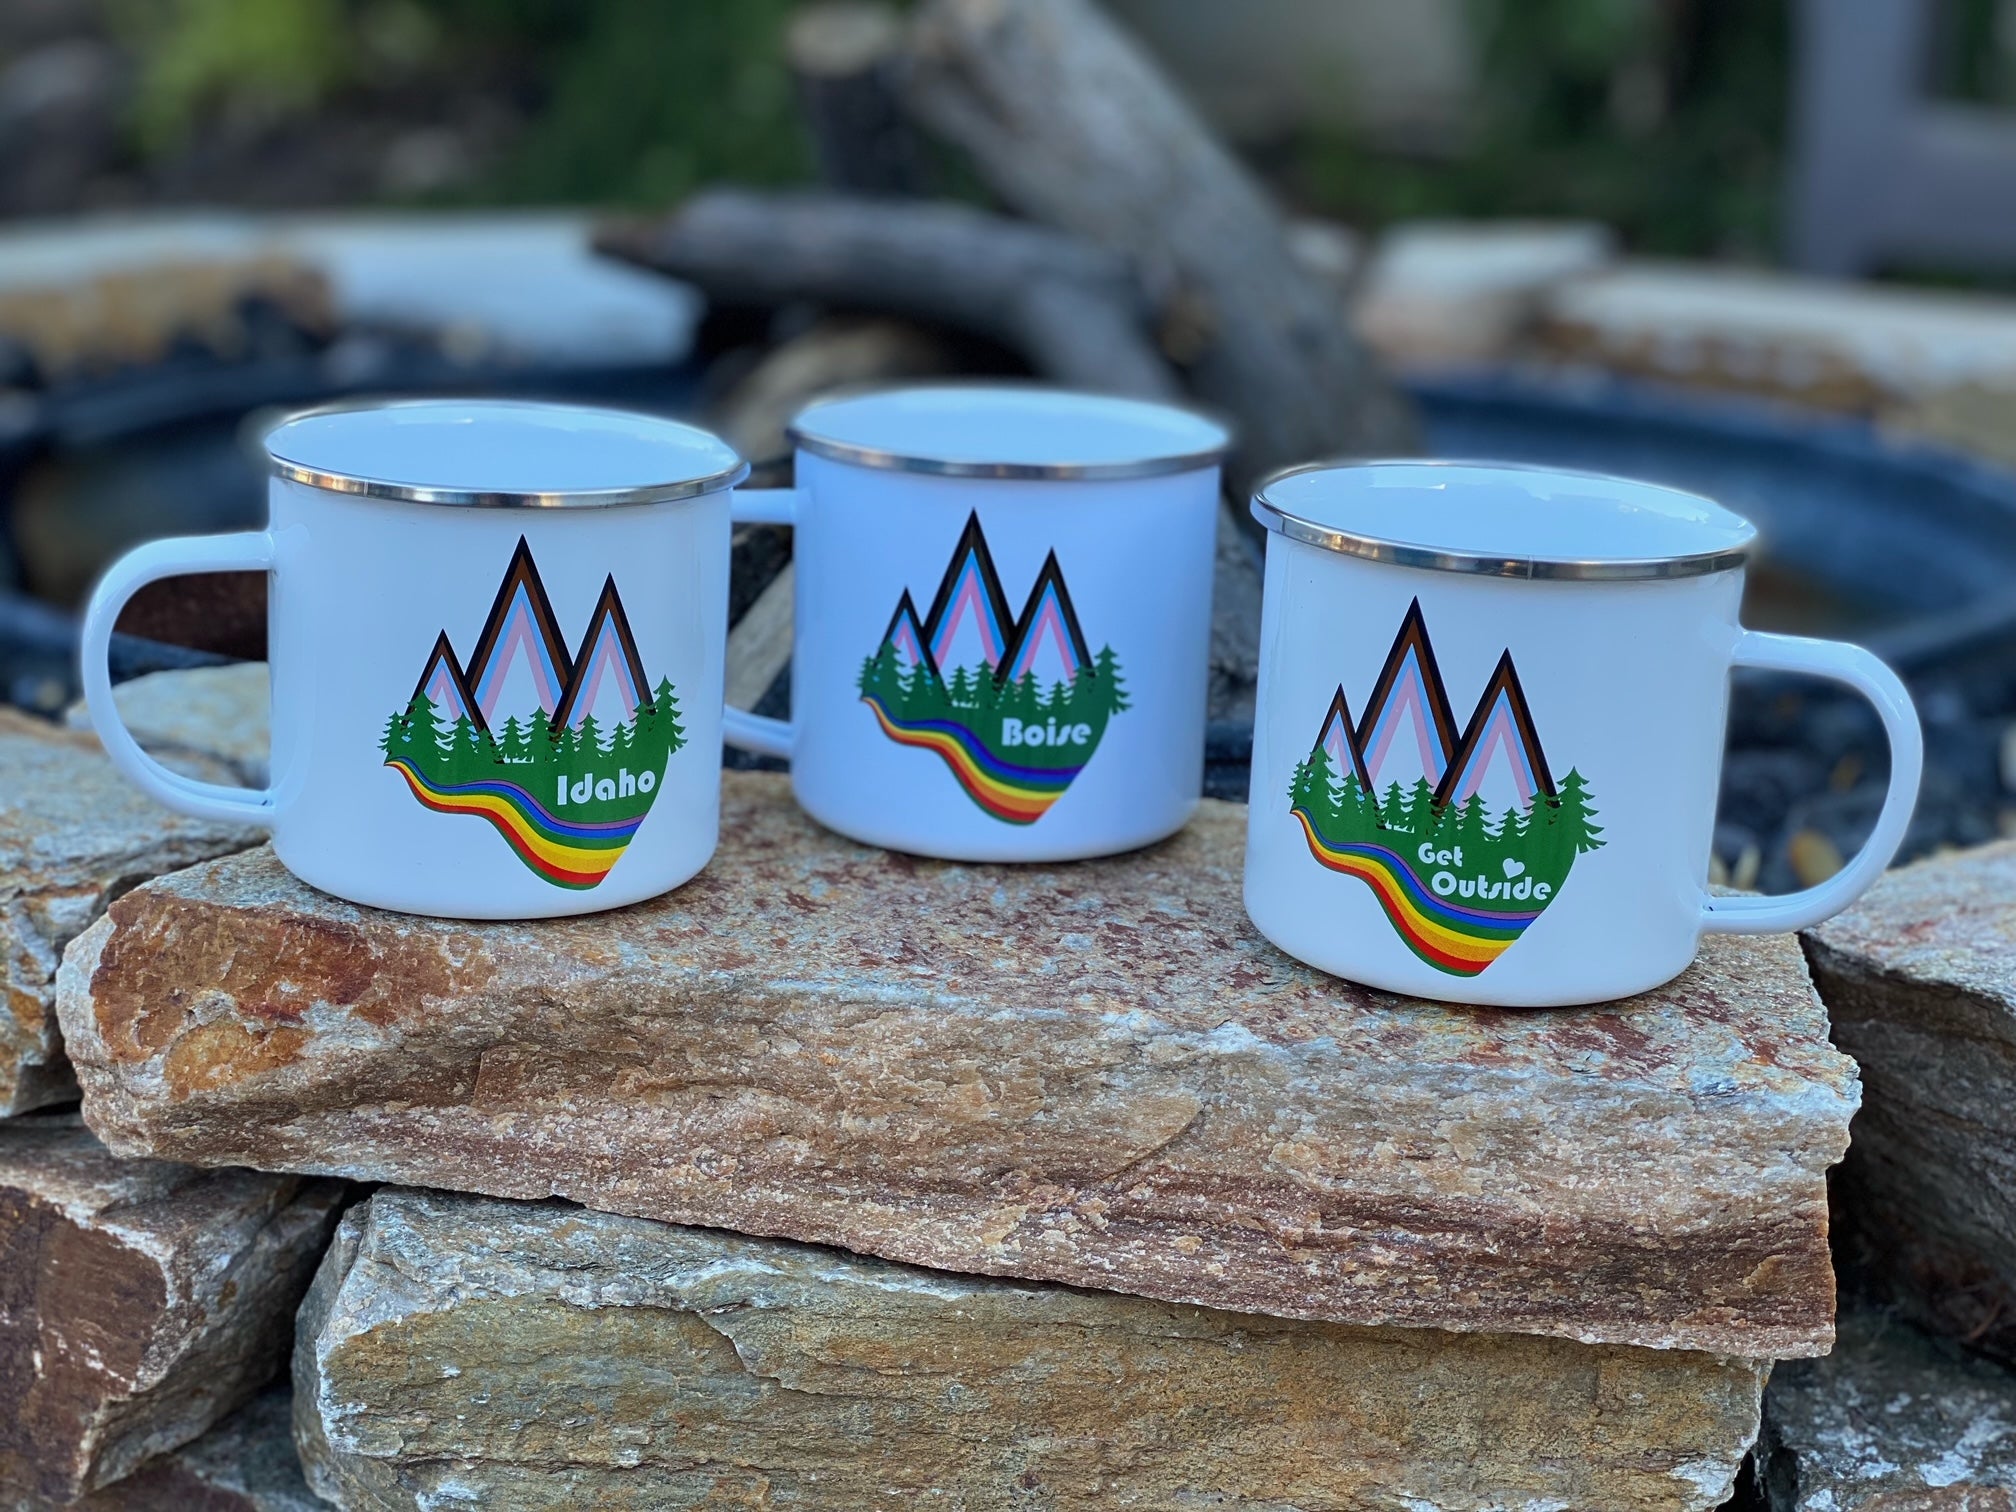 Progressive Pride Camper Mug